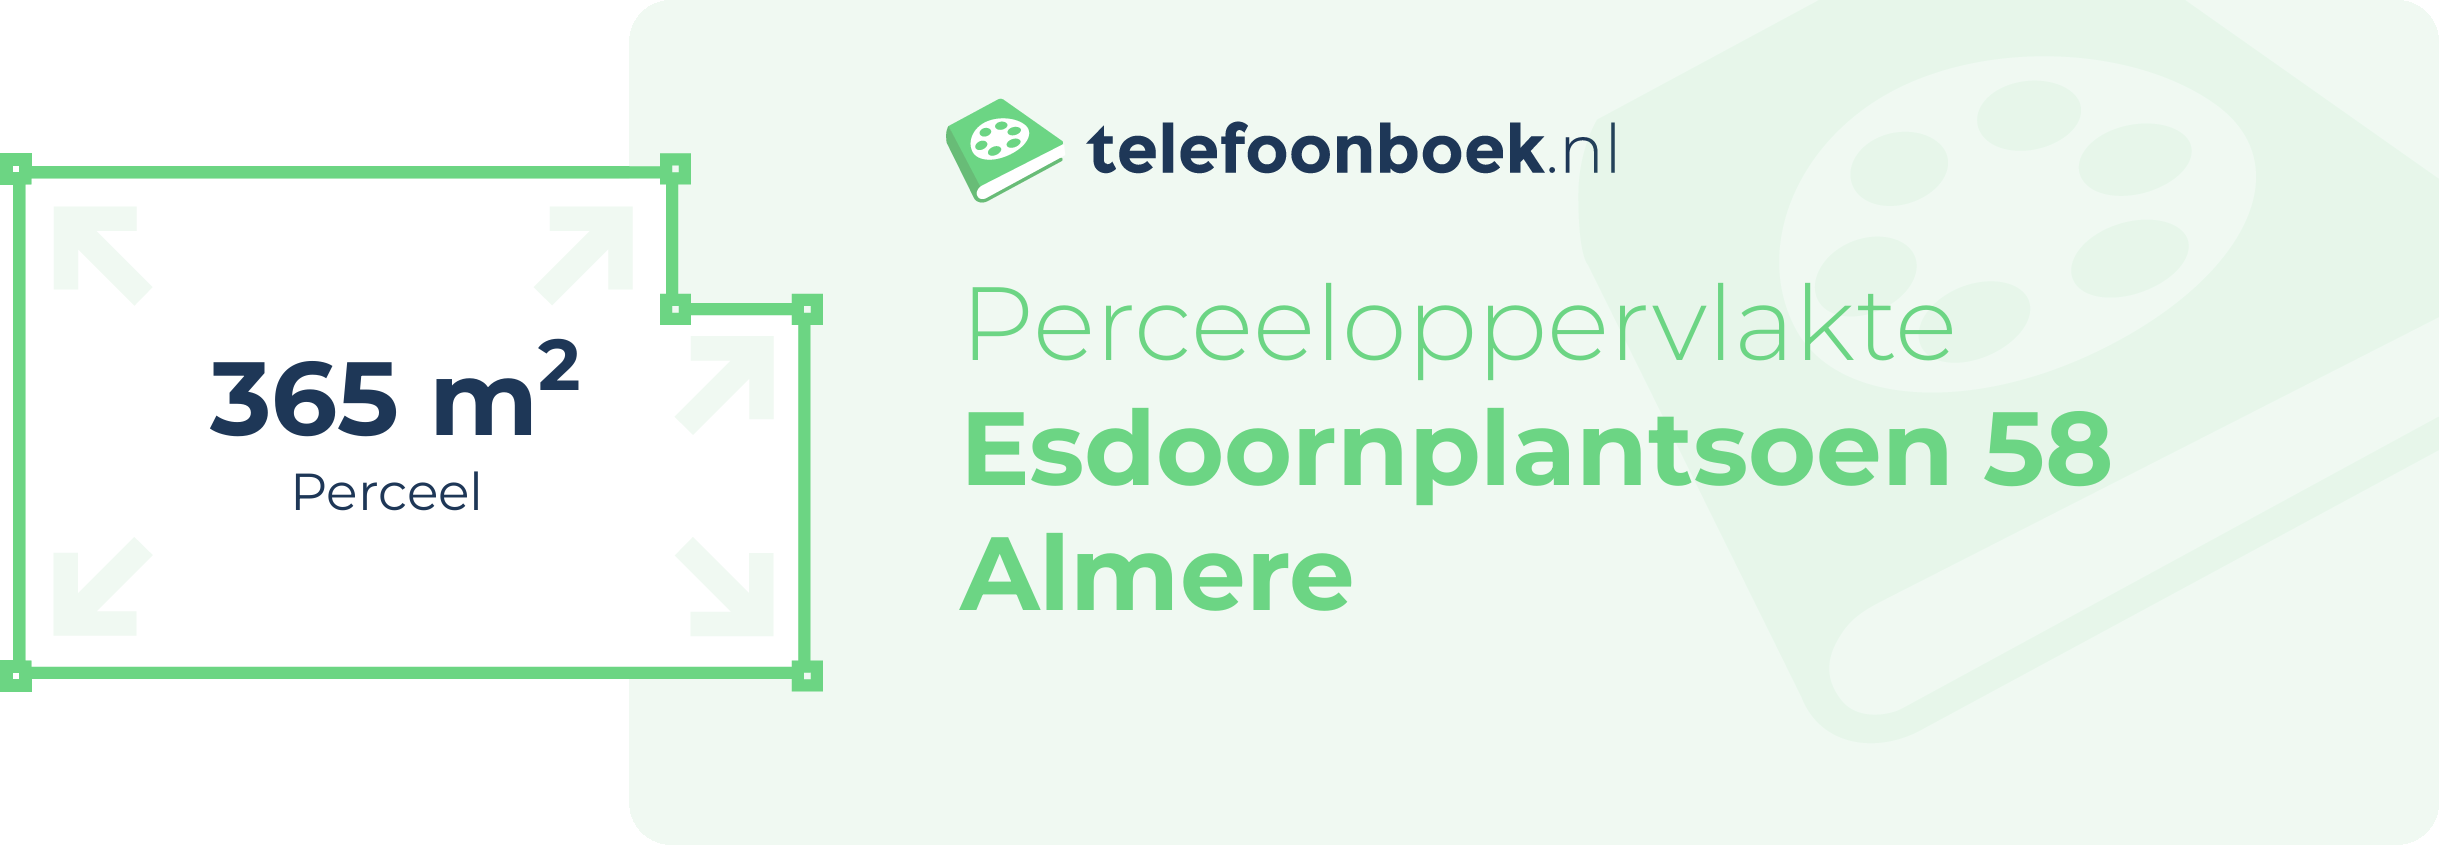 Perceeloppervlakte Esdoornplantsoen 58 Almere